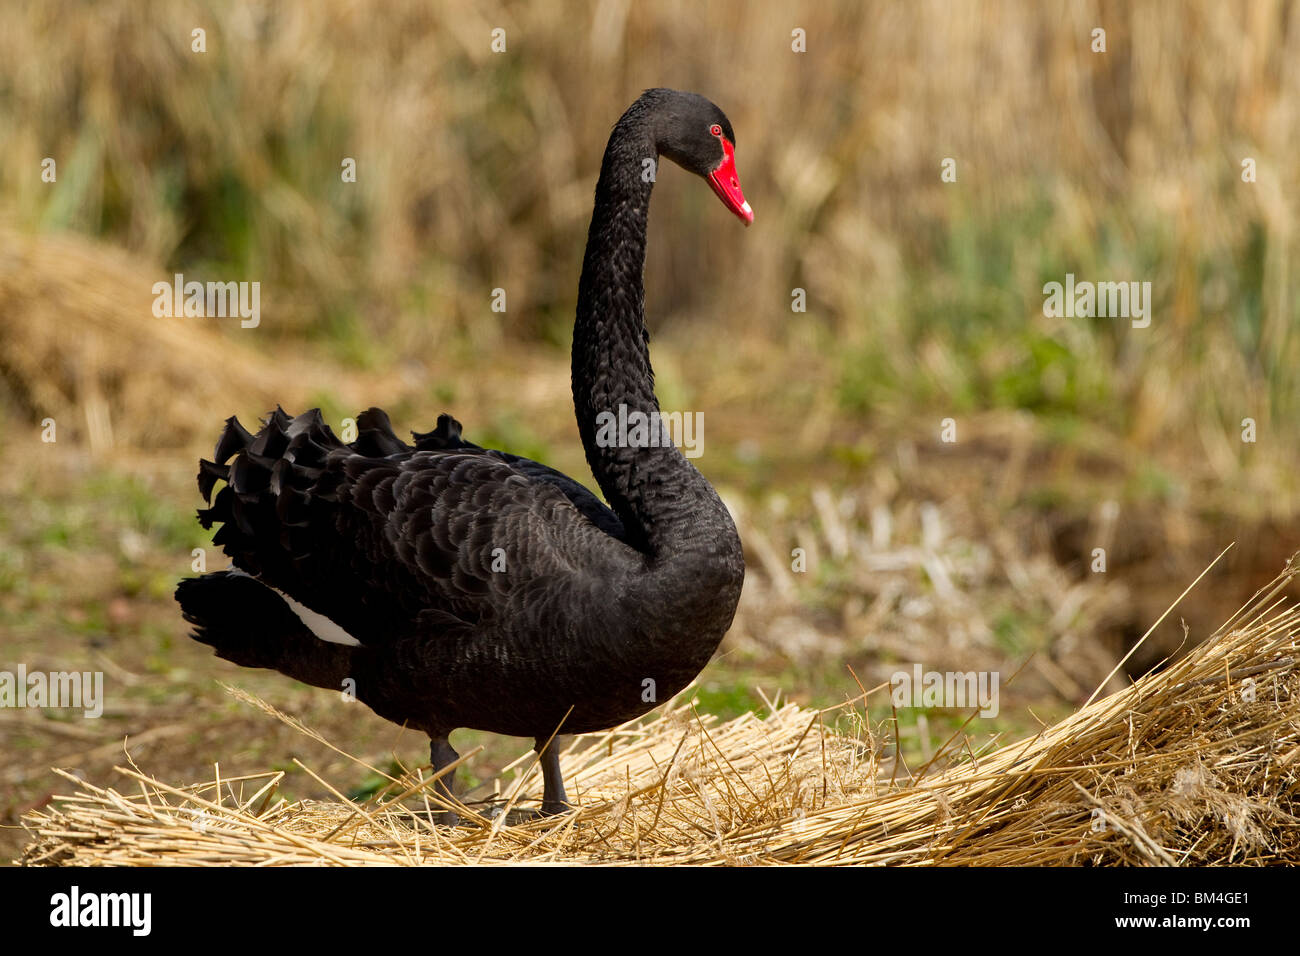 Black swan, Abbotsbury swannery. Stock Photo